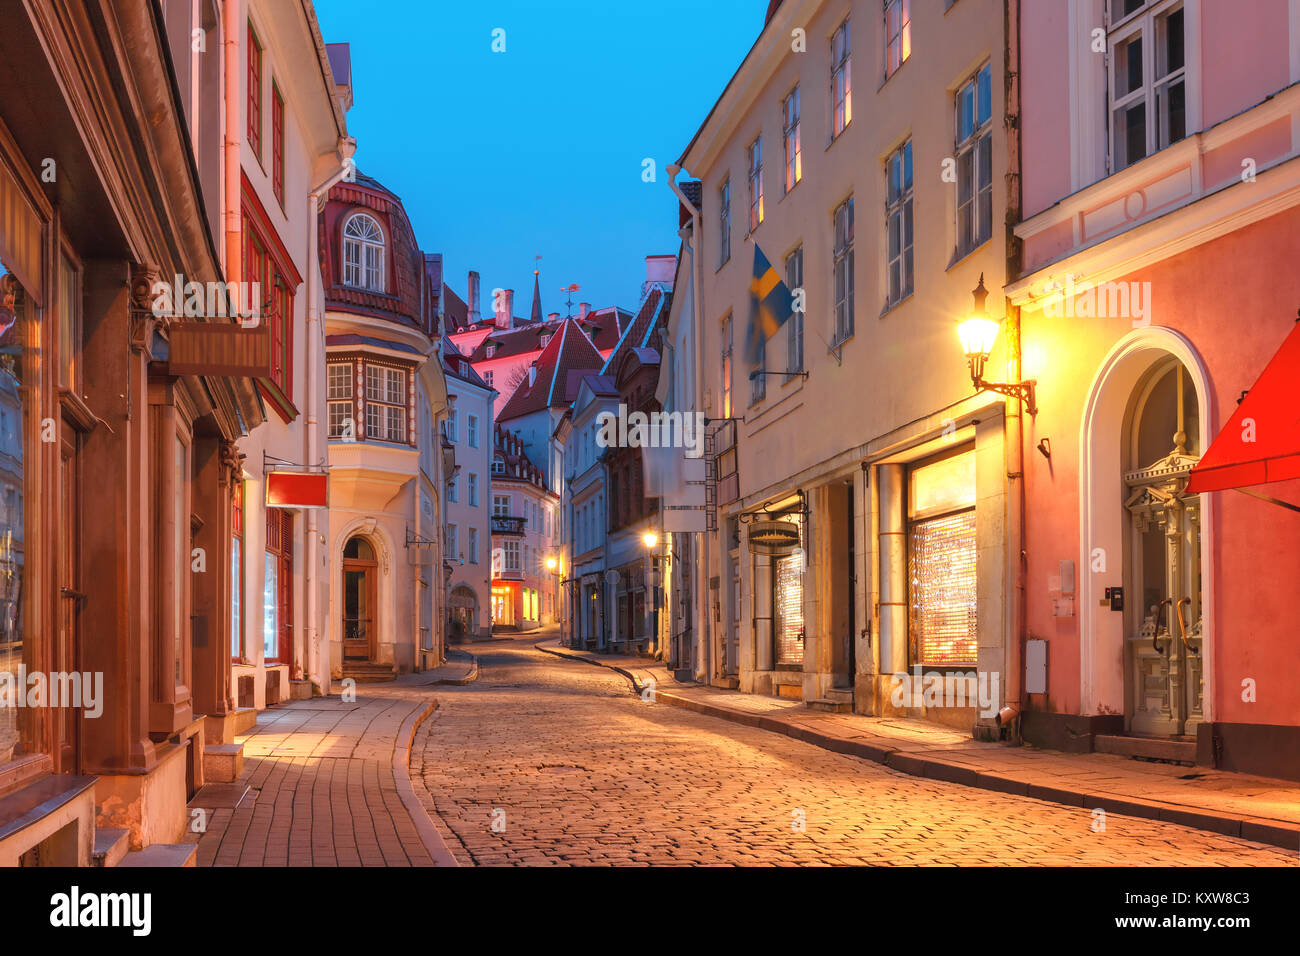 Evening street in the Old Town, Tallinn, Estonia Stock Photo